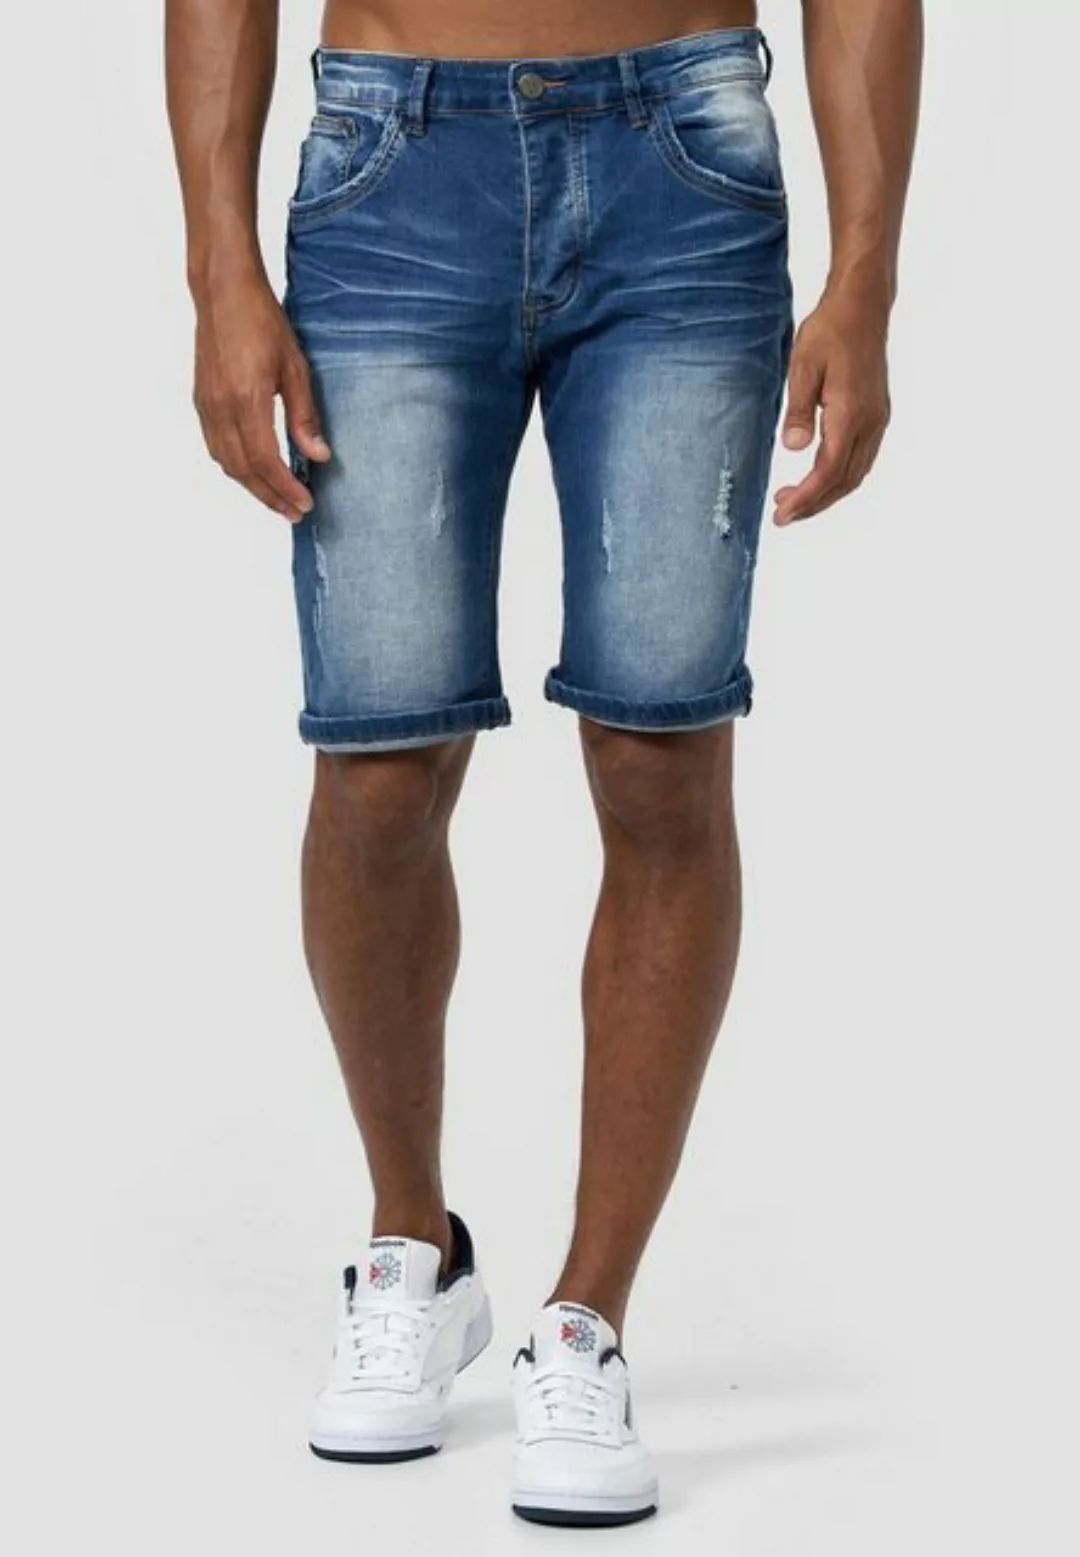 LEO GUTTI Jeansshorts Denim Capri Jeans Shorts 3/4 Bermuda Sommer Hose Kurz günstig online kaufen